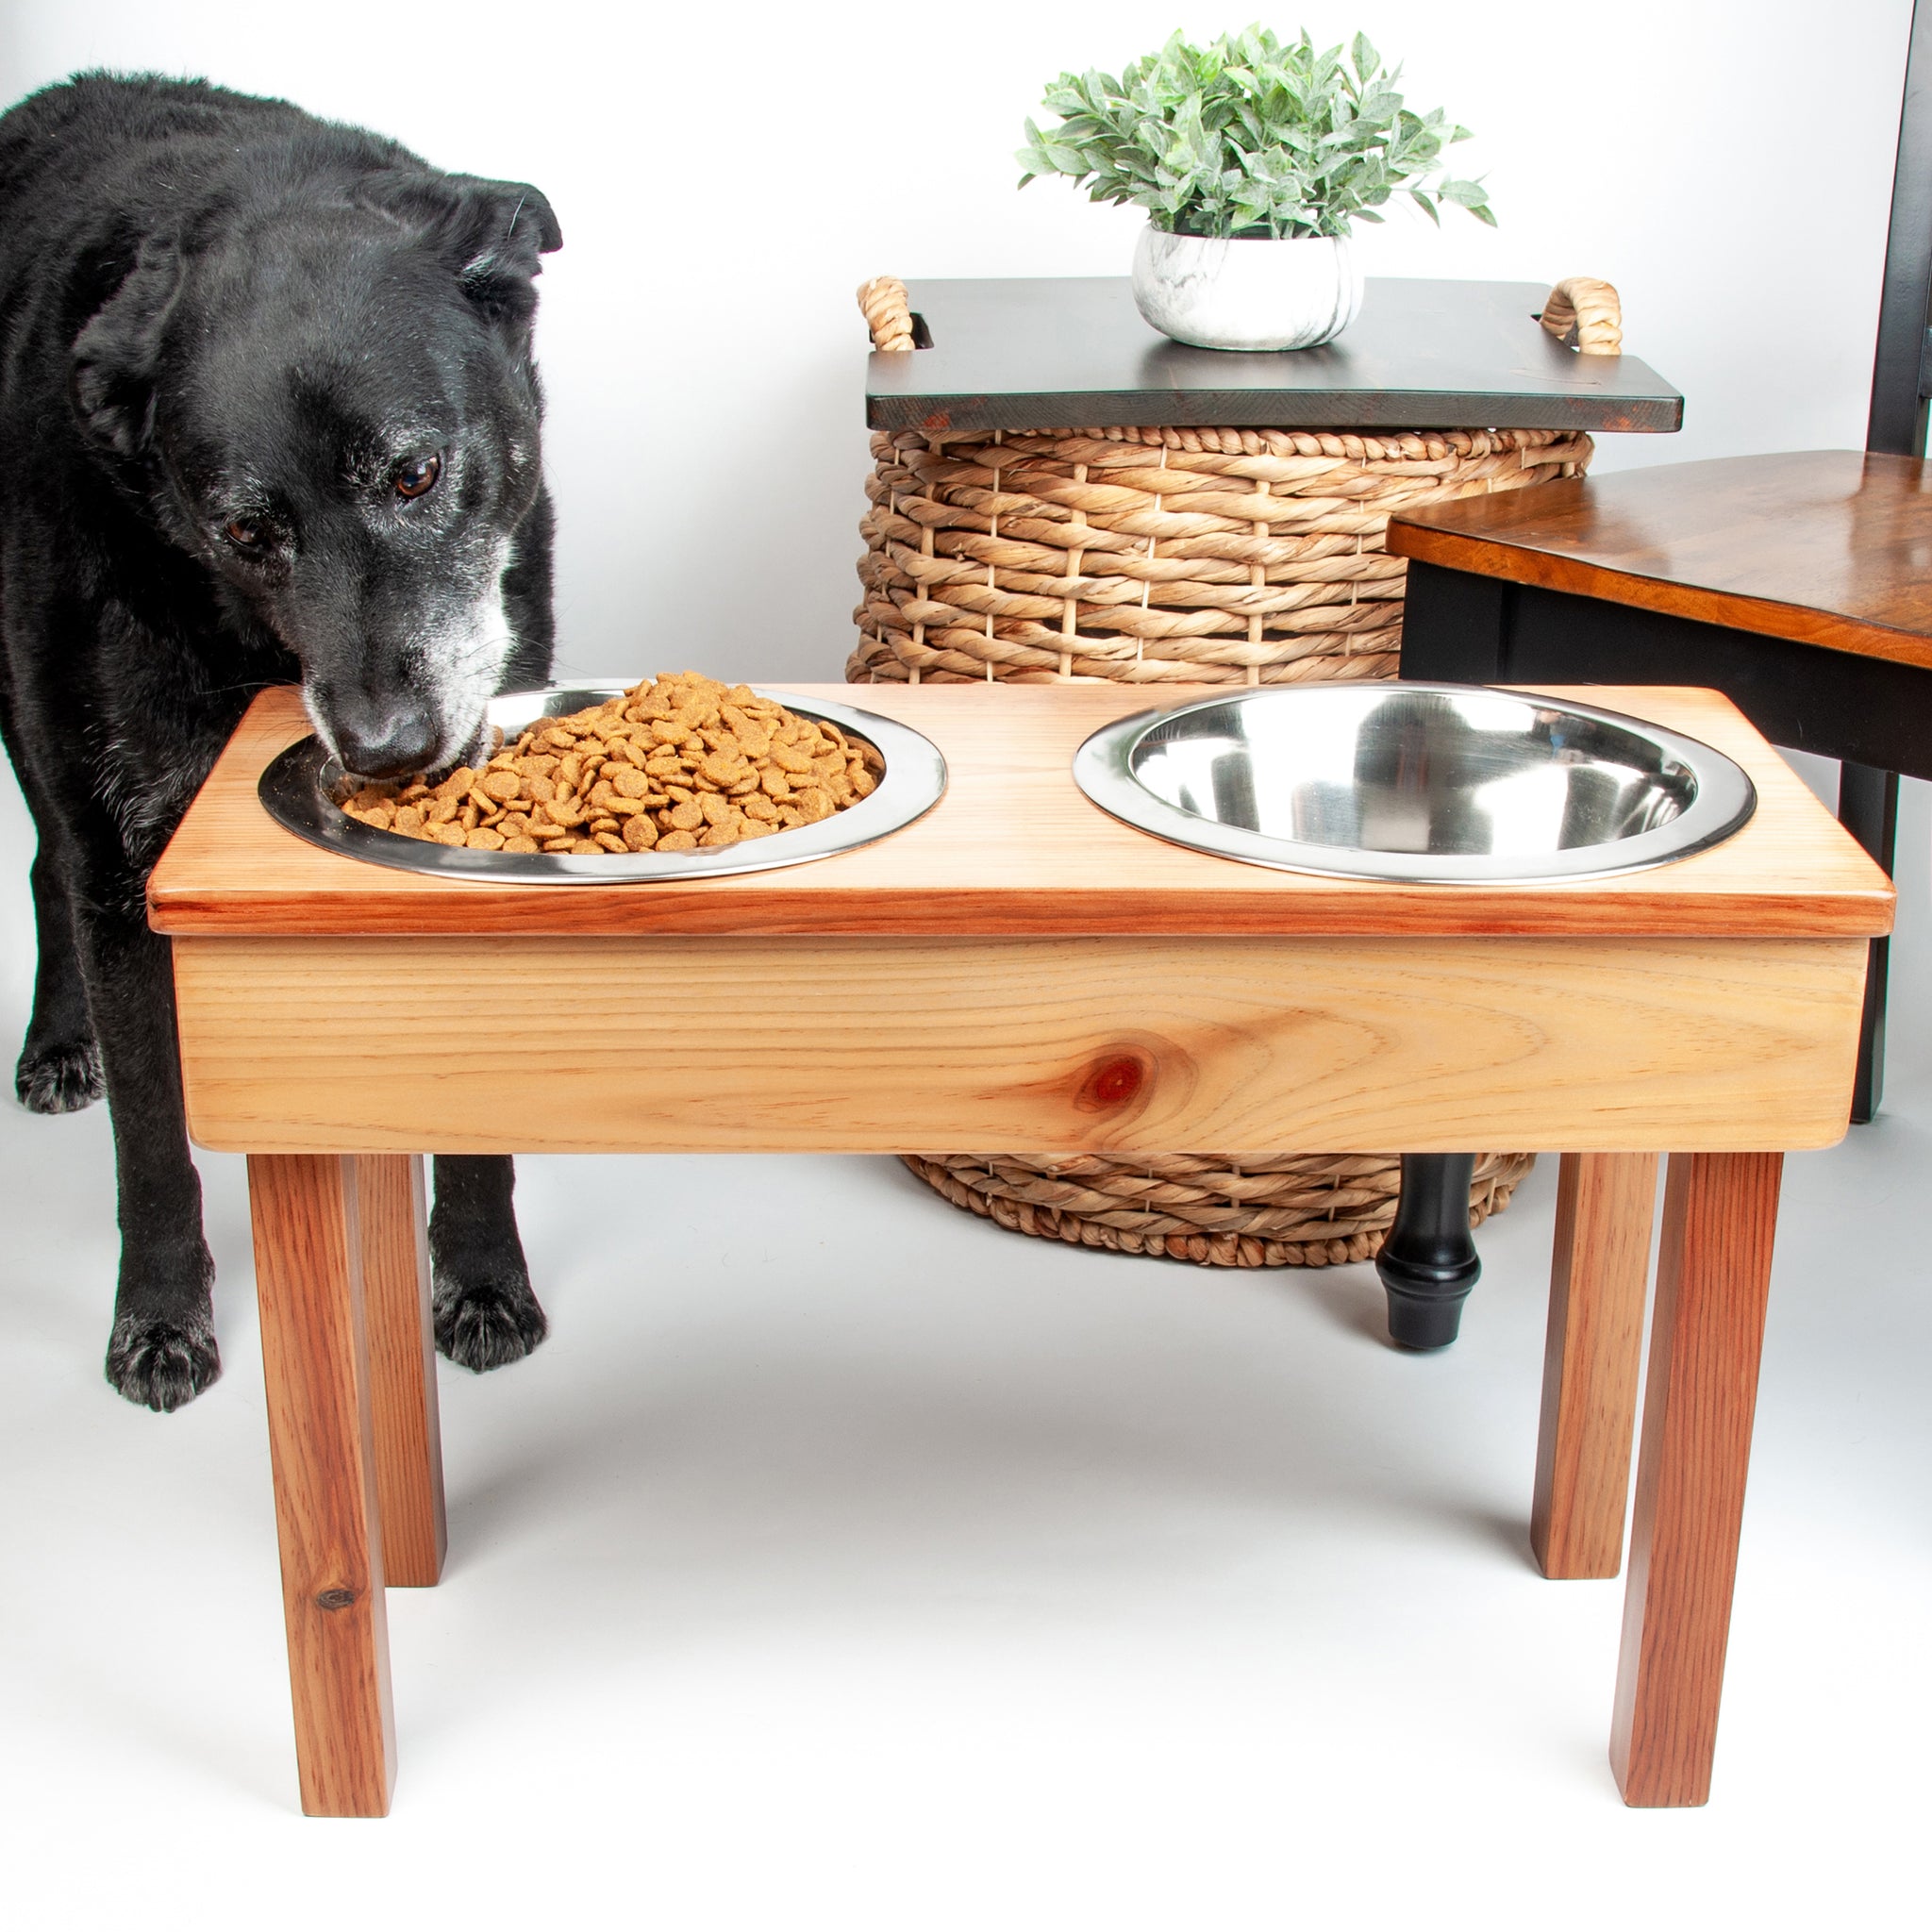 Large Dog Dish Holder, Wood Dog Feeder With Bowls